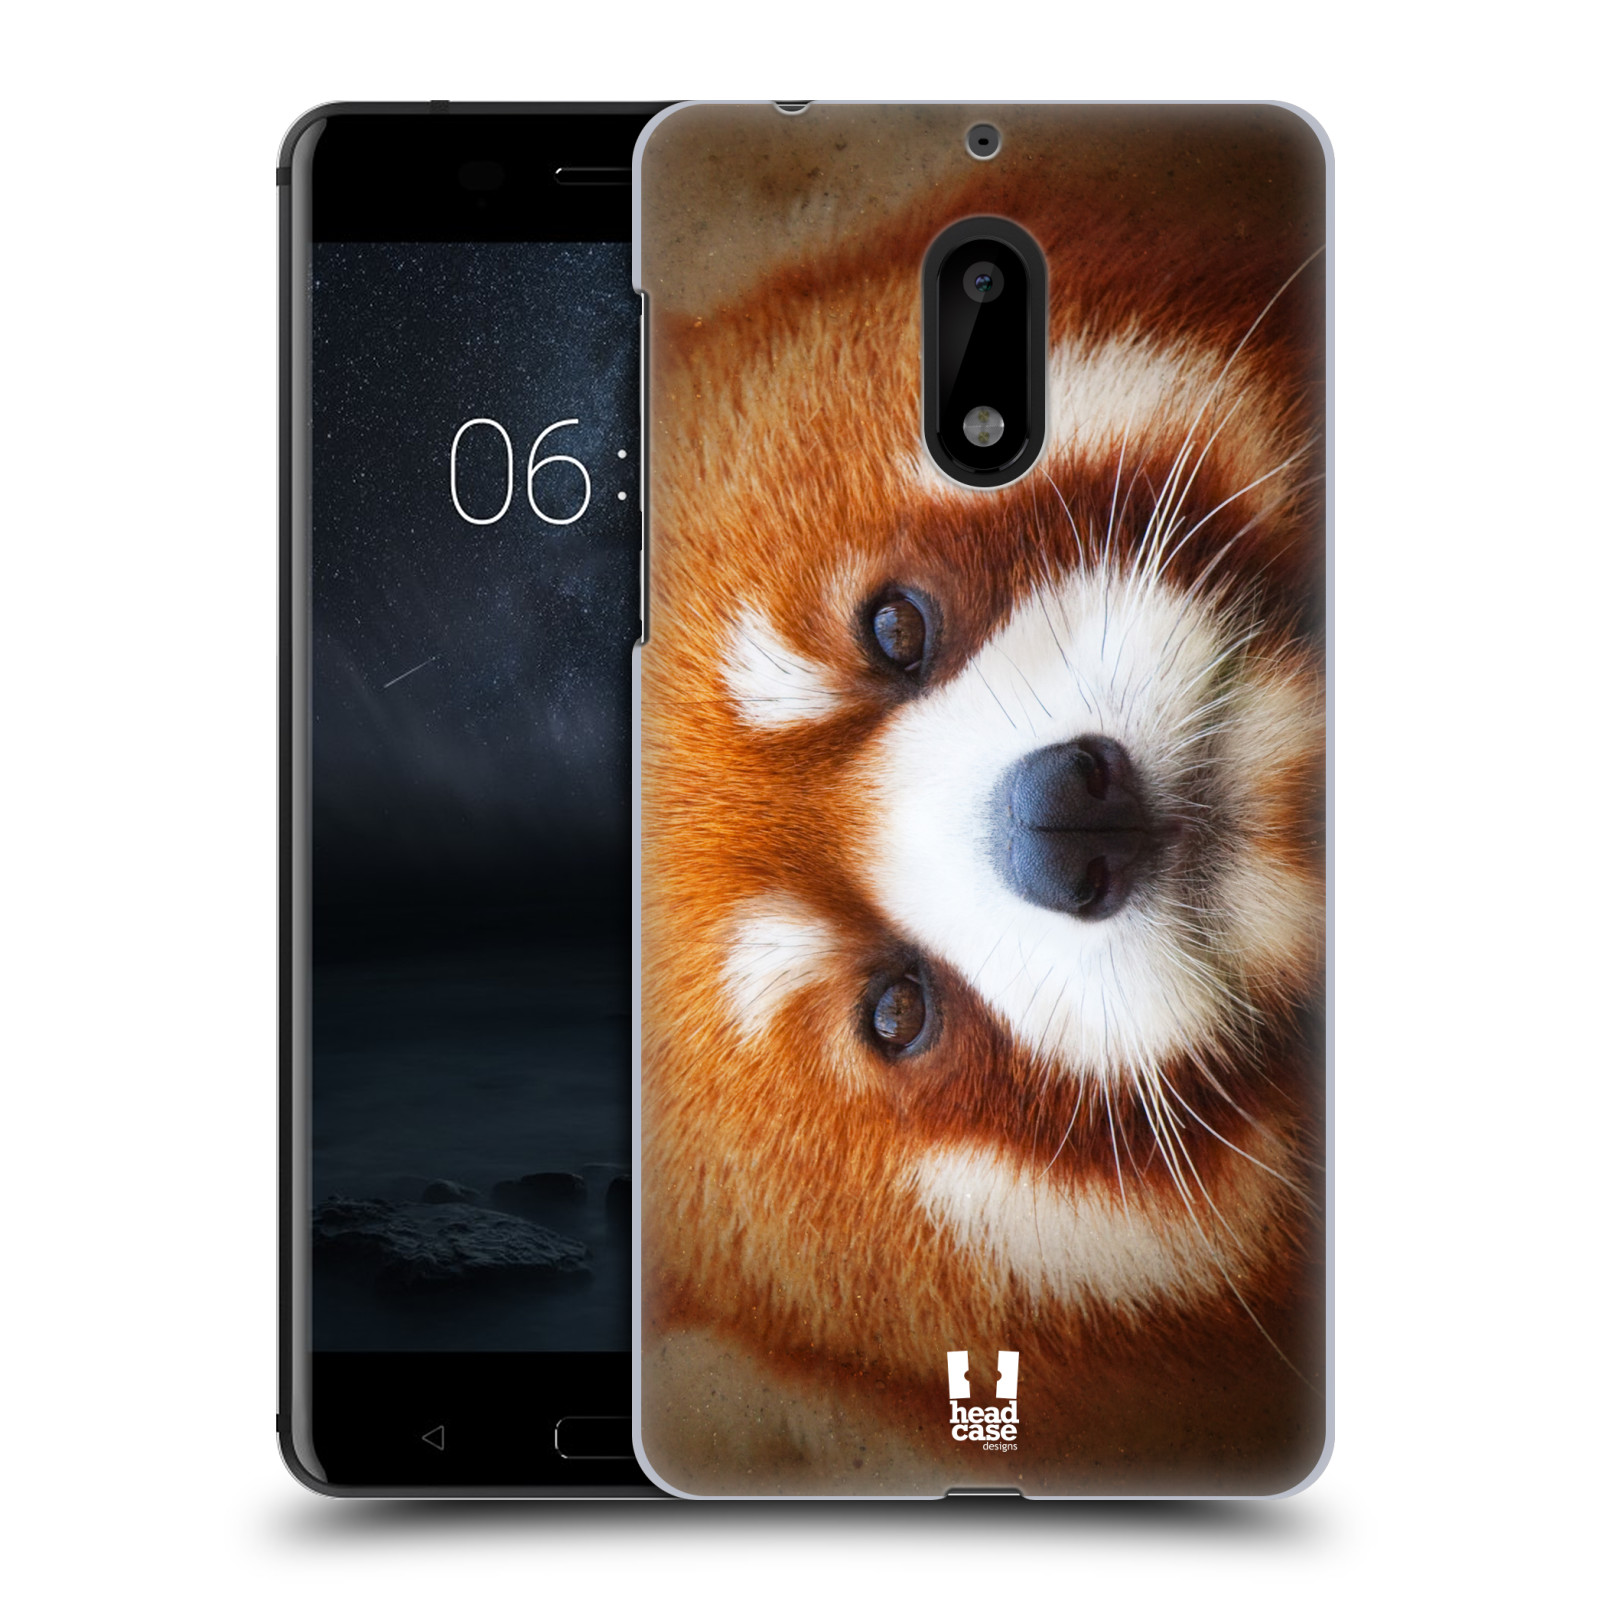 HEAD CASE plastový obal na mobil Nokia 6 vzor Zvířecí tváře 2 medvěd panda rudá